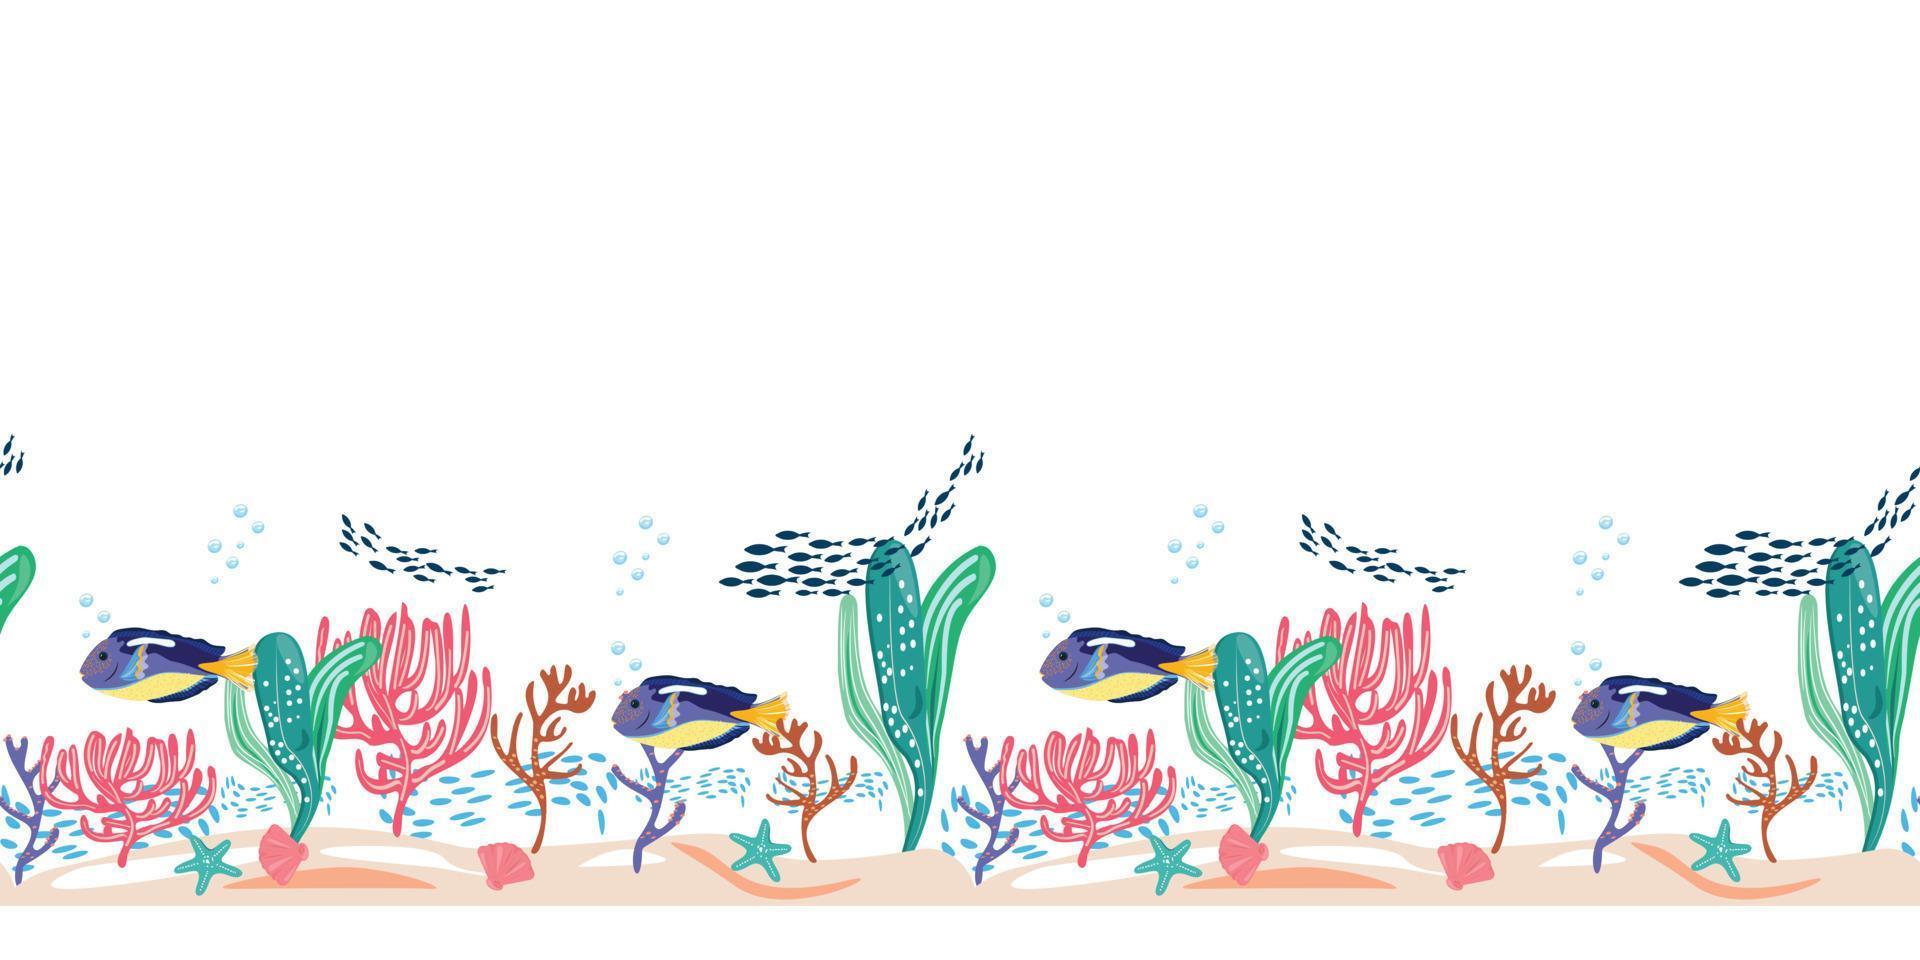 acquario marino con pesci blu, stelle marine, conchiglie e coralli. modello orizzontale senza cuciture con pesci e oggetti subacquei su sfondo bianco. per tessile, card, superfici di design, packaging. vettore